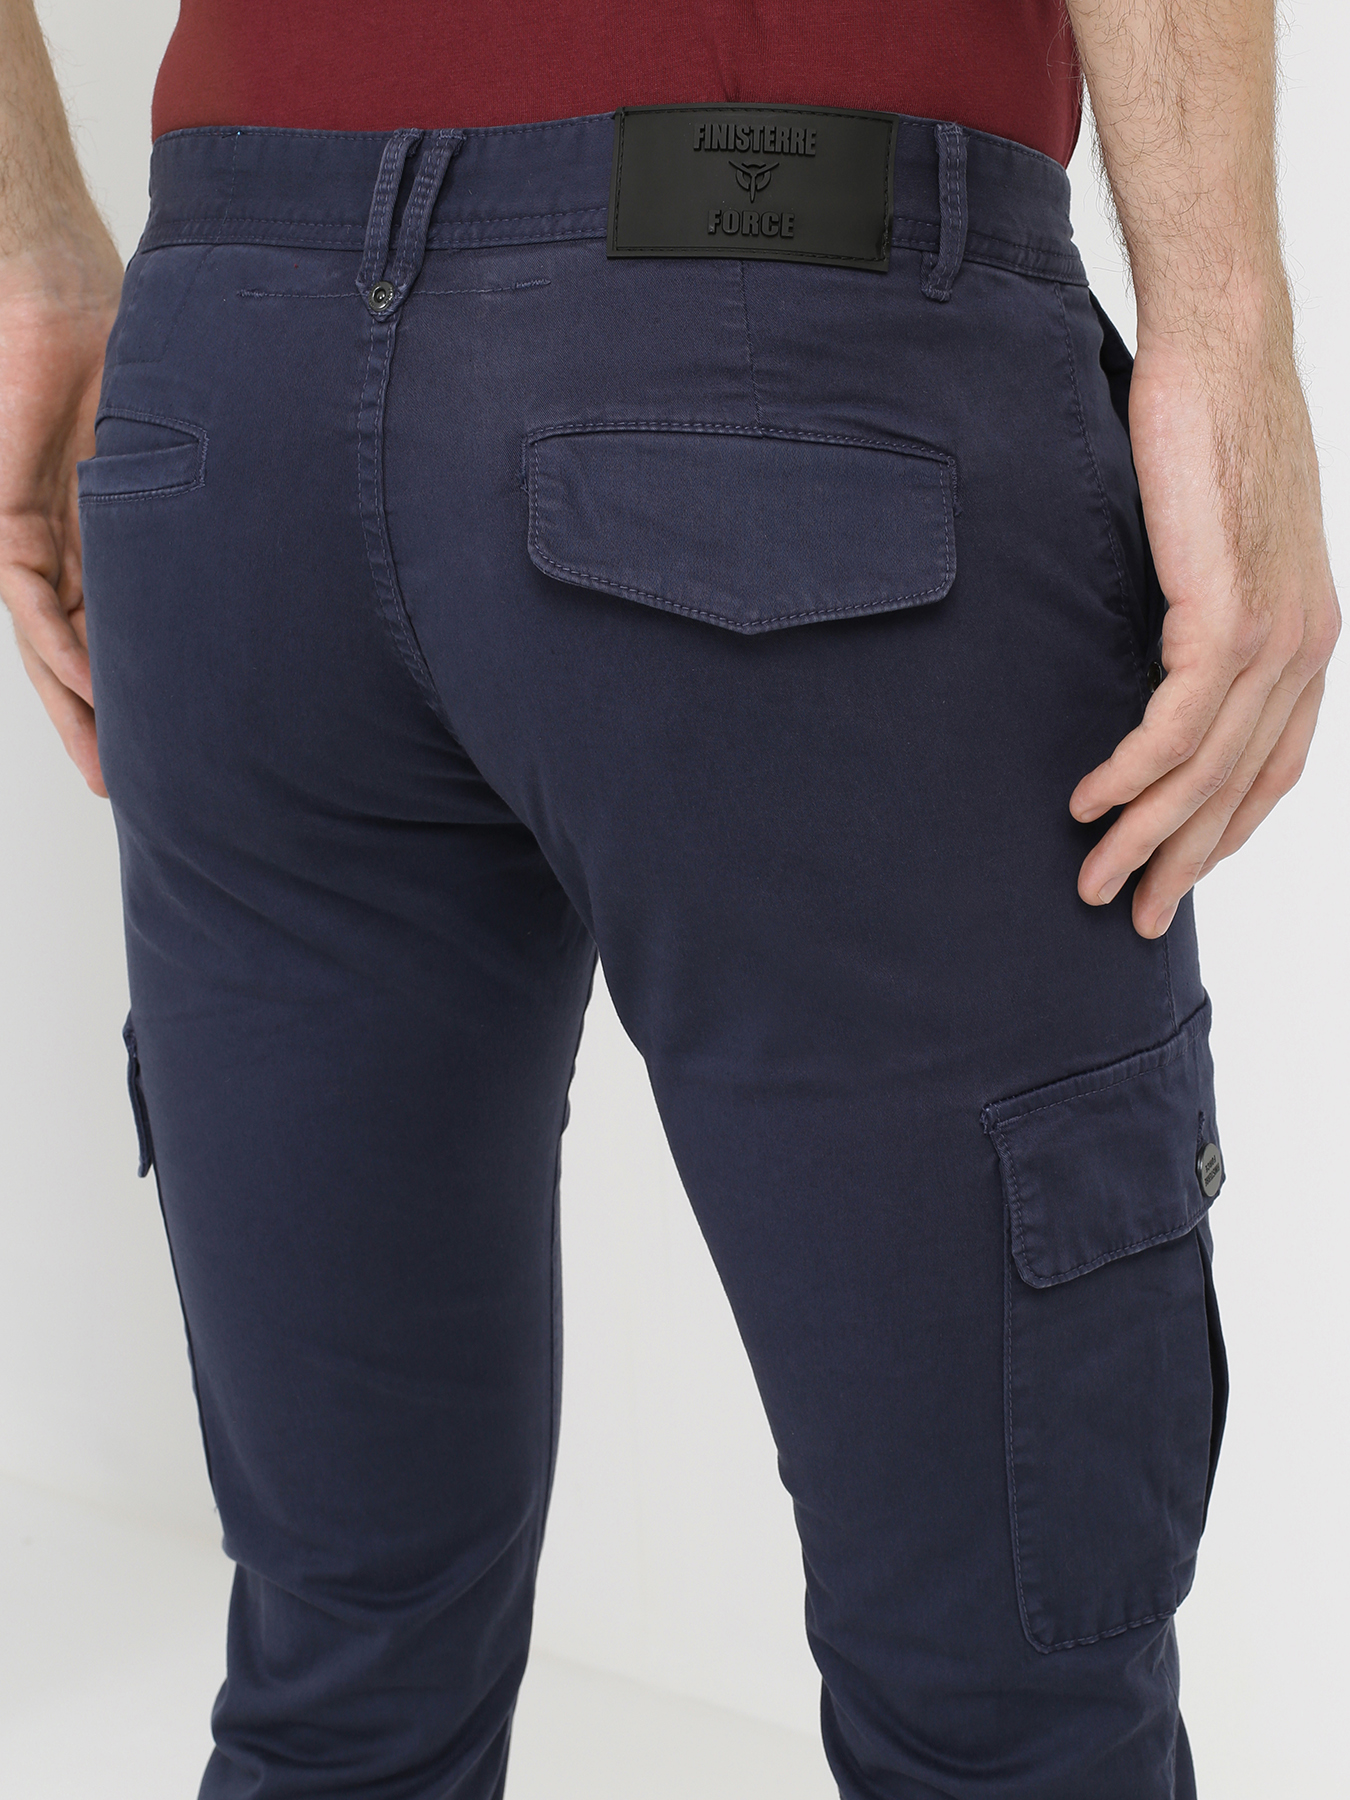 Finisterre Force Узкие мужские брюки 331075-012 Фото 4